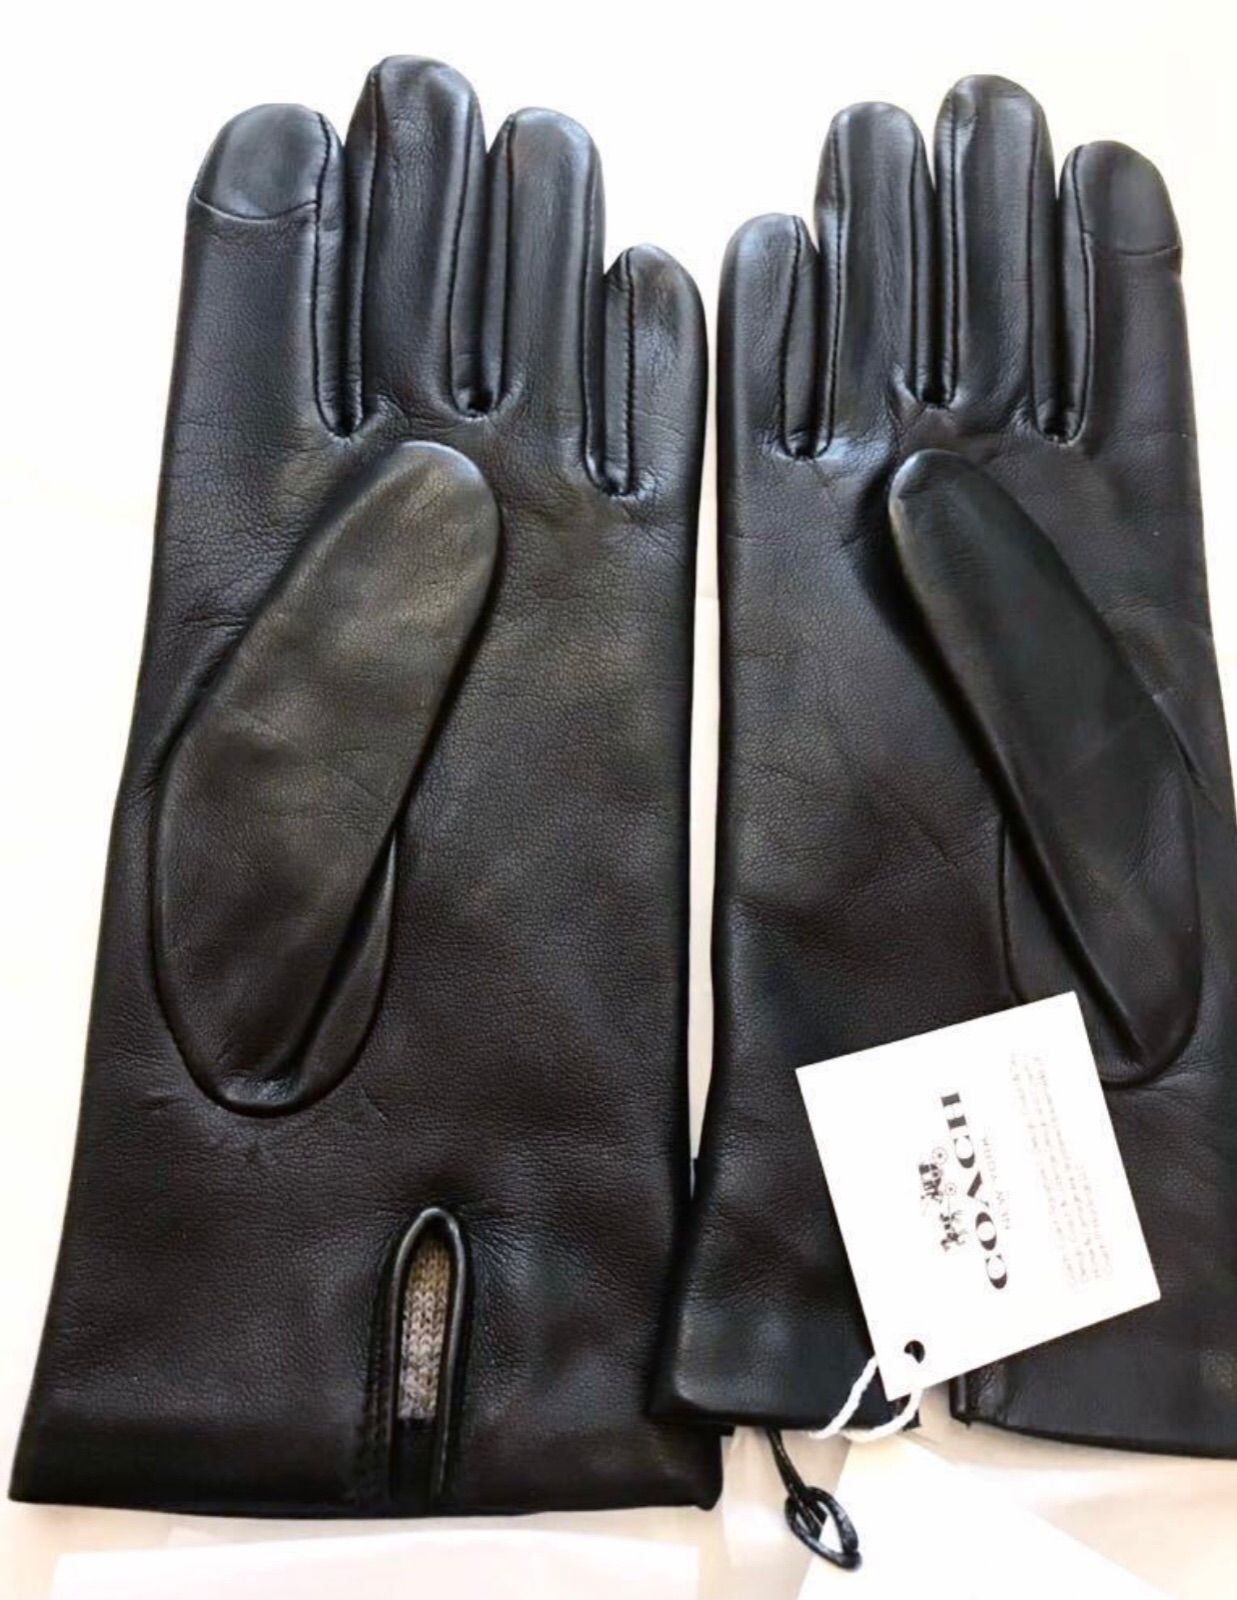 新品 ◆コーチ スマホ対応 本革 手袋 サイズ7, 7.5◆黒 正規品ギフト材有